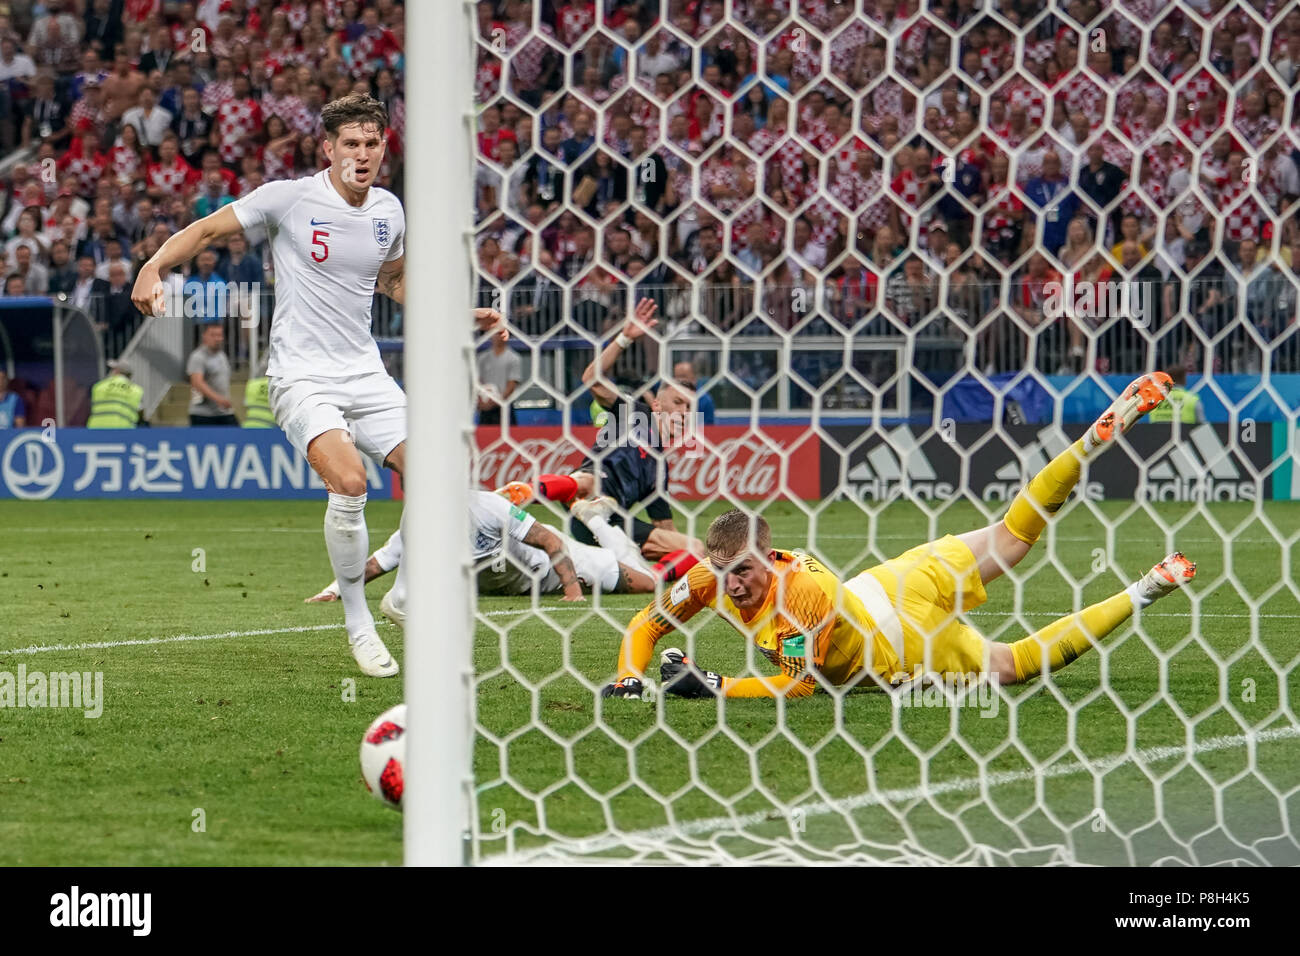 10 juillet 2018 : Ivan Perisic tir au but de la Croatie au stade Luzhniki durant la demi-finale entre l'Angleterre et la Croatie lors de la Coupe du Monde 2018. Ulrik Pedersen/CSM Banque D'Images